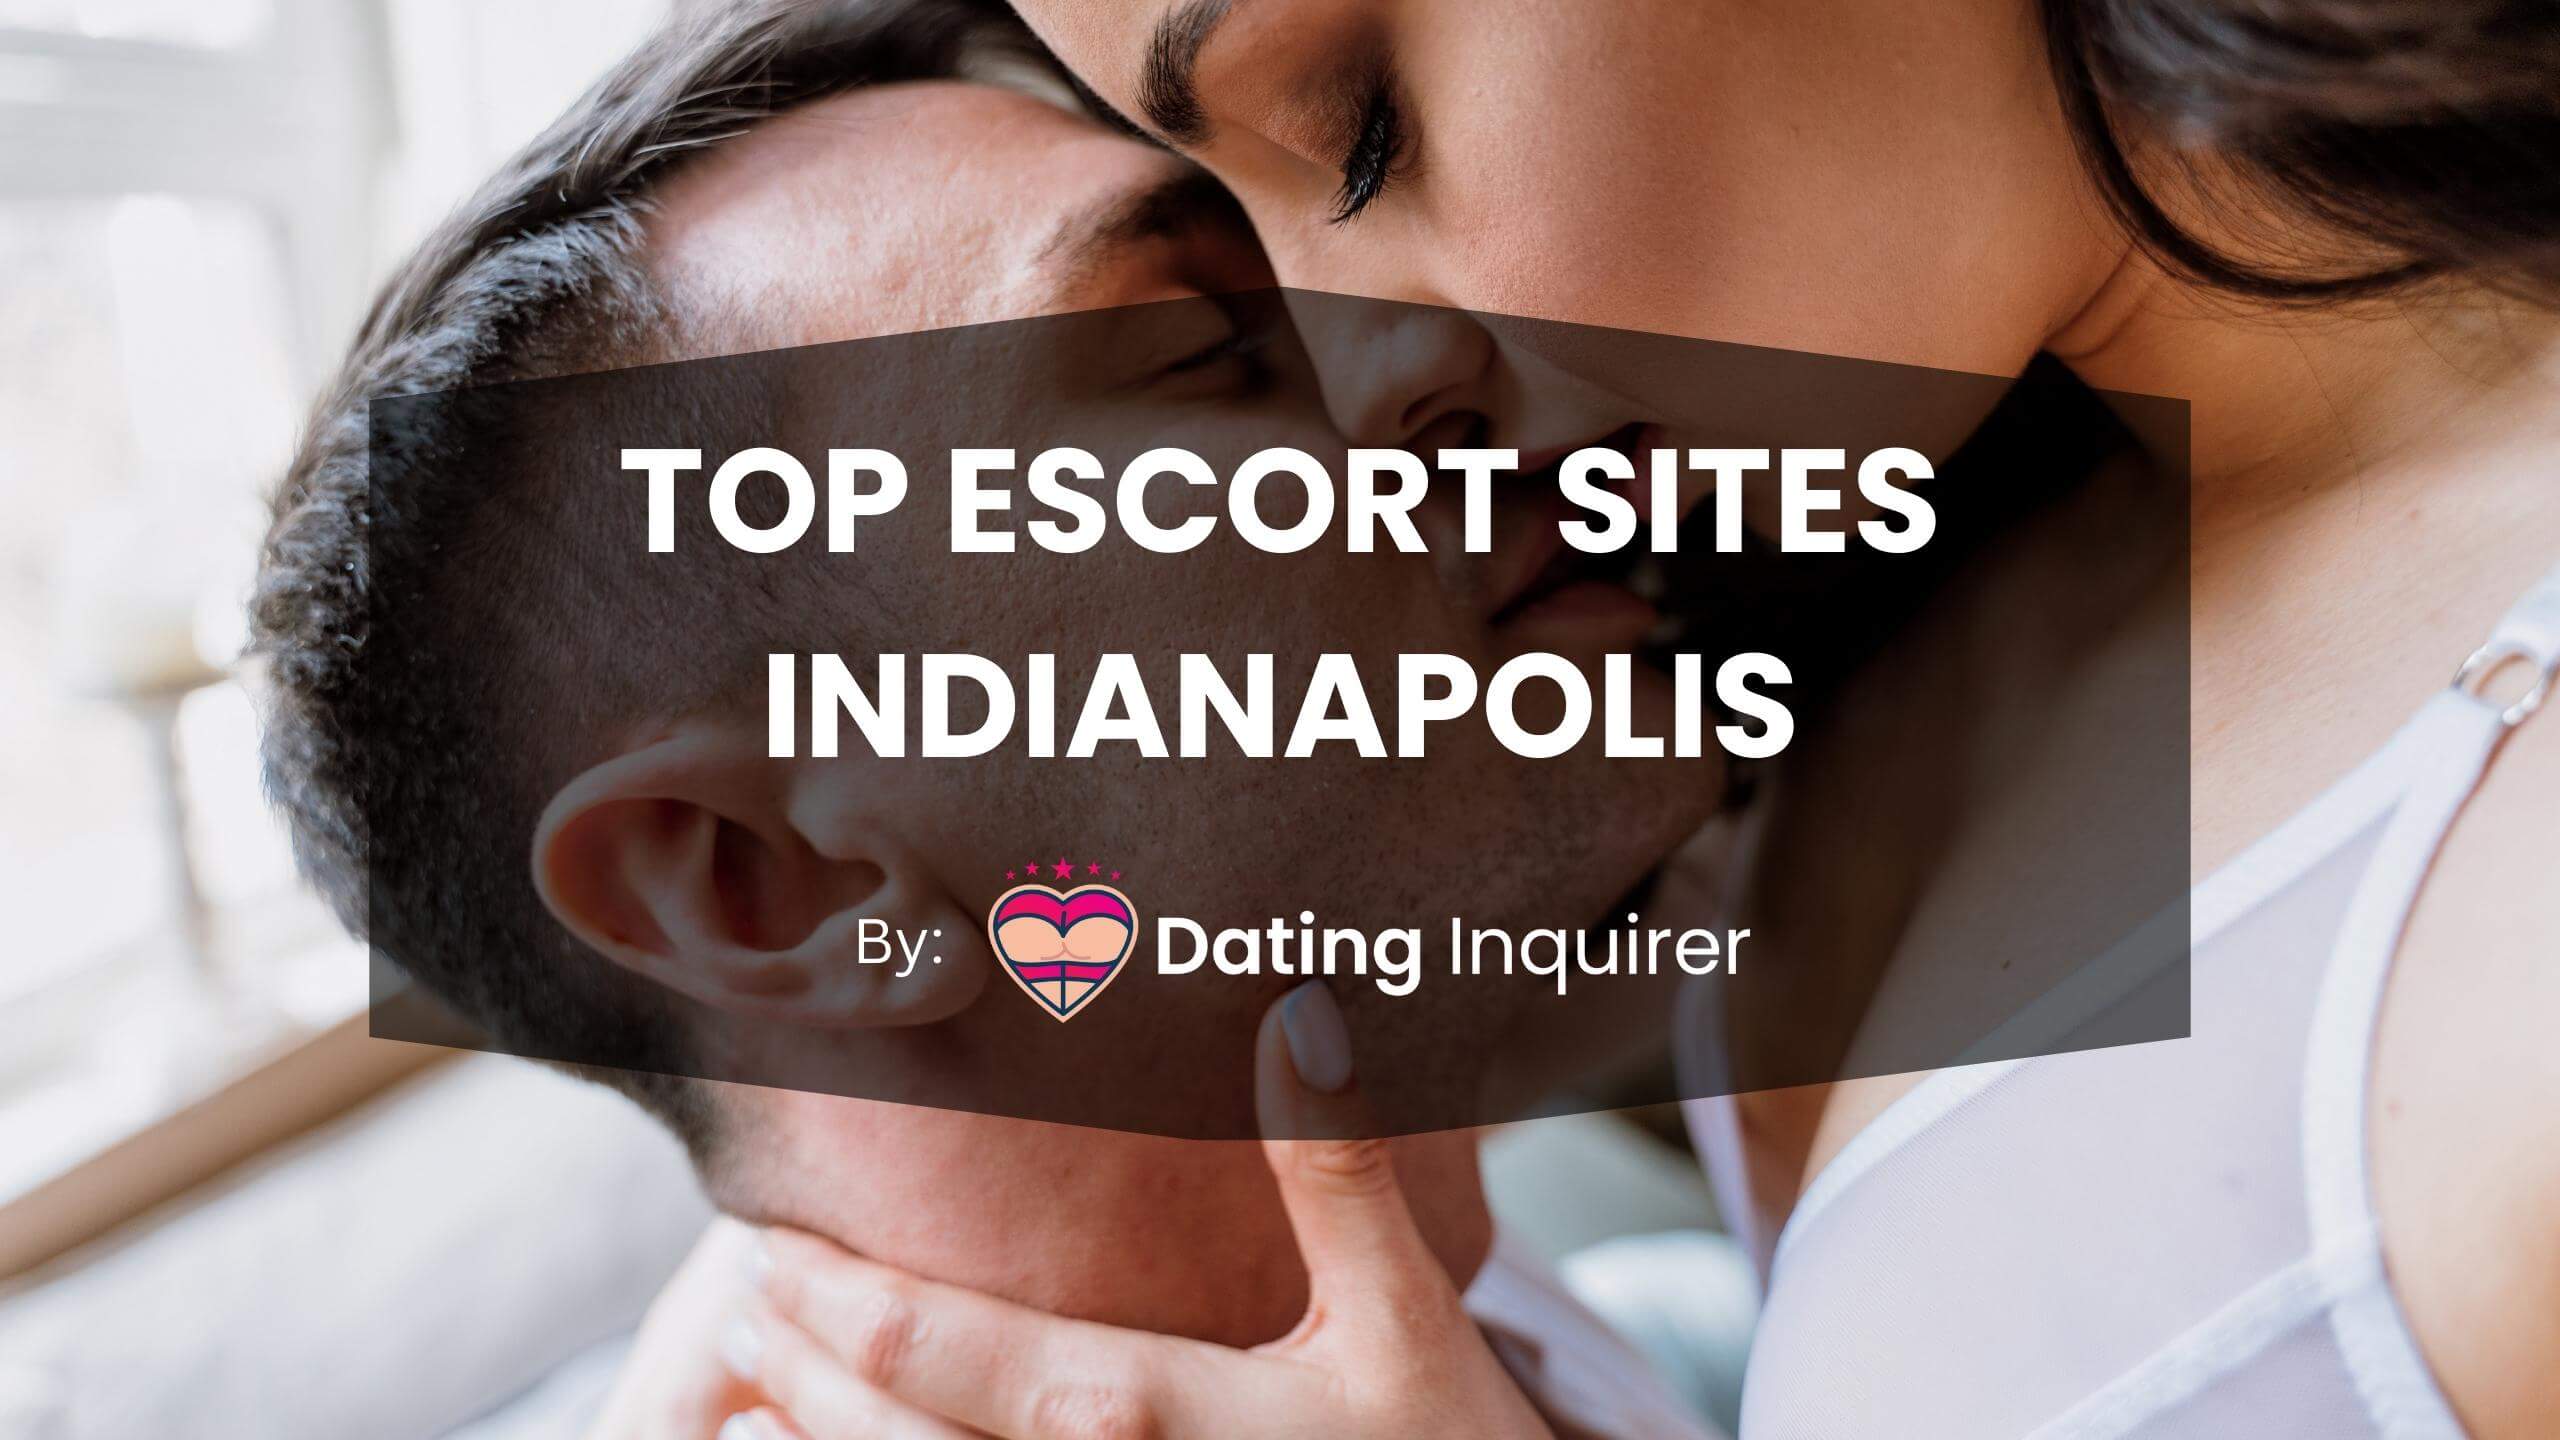 top escort sites indianapolis cover